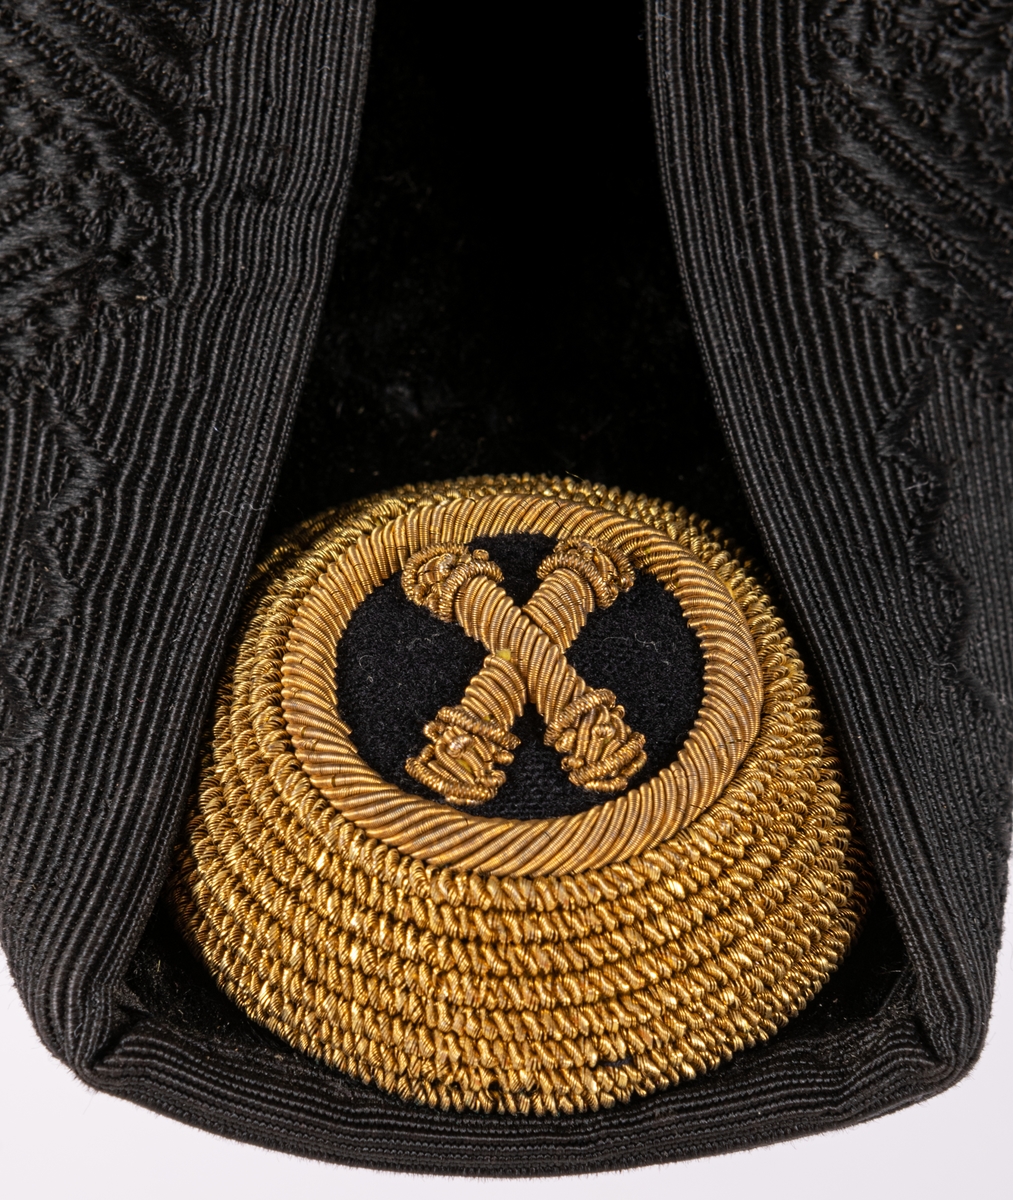 Uniformshatt till paraduniform med tillhörande hattask.